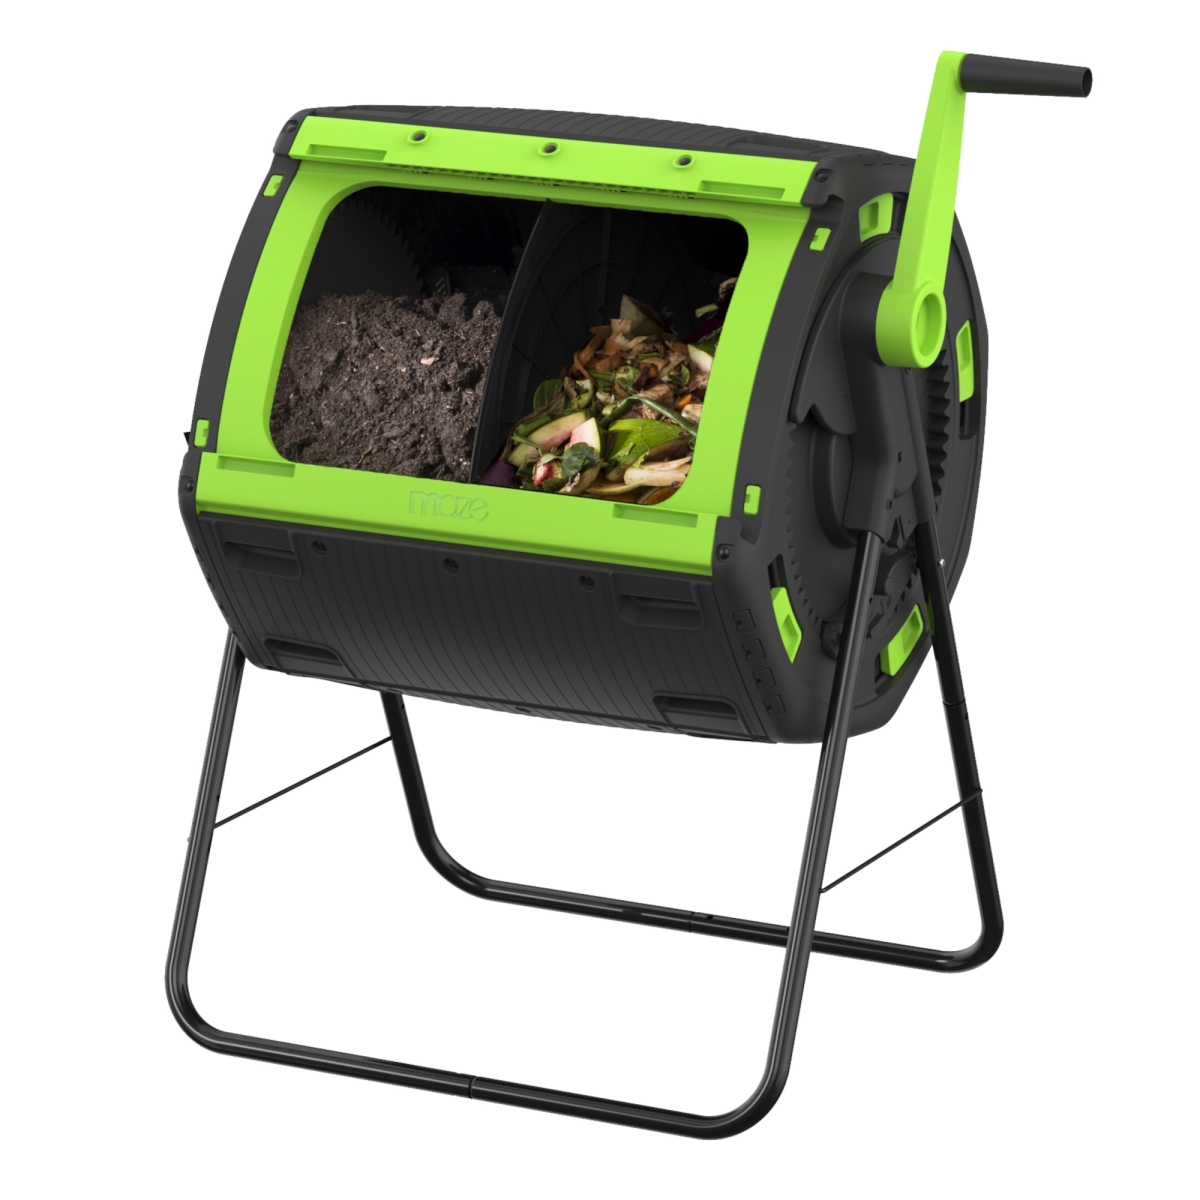 Invernadero RSI- 48 Gallon Geared Two Compartment Compost Tumbler